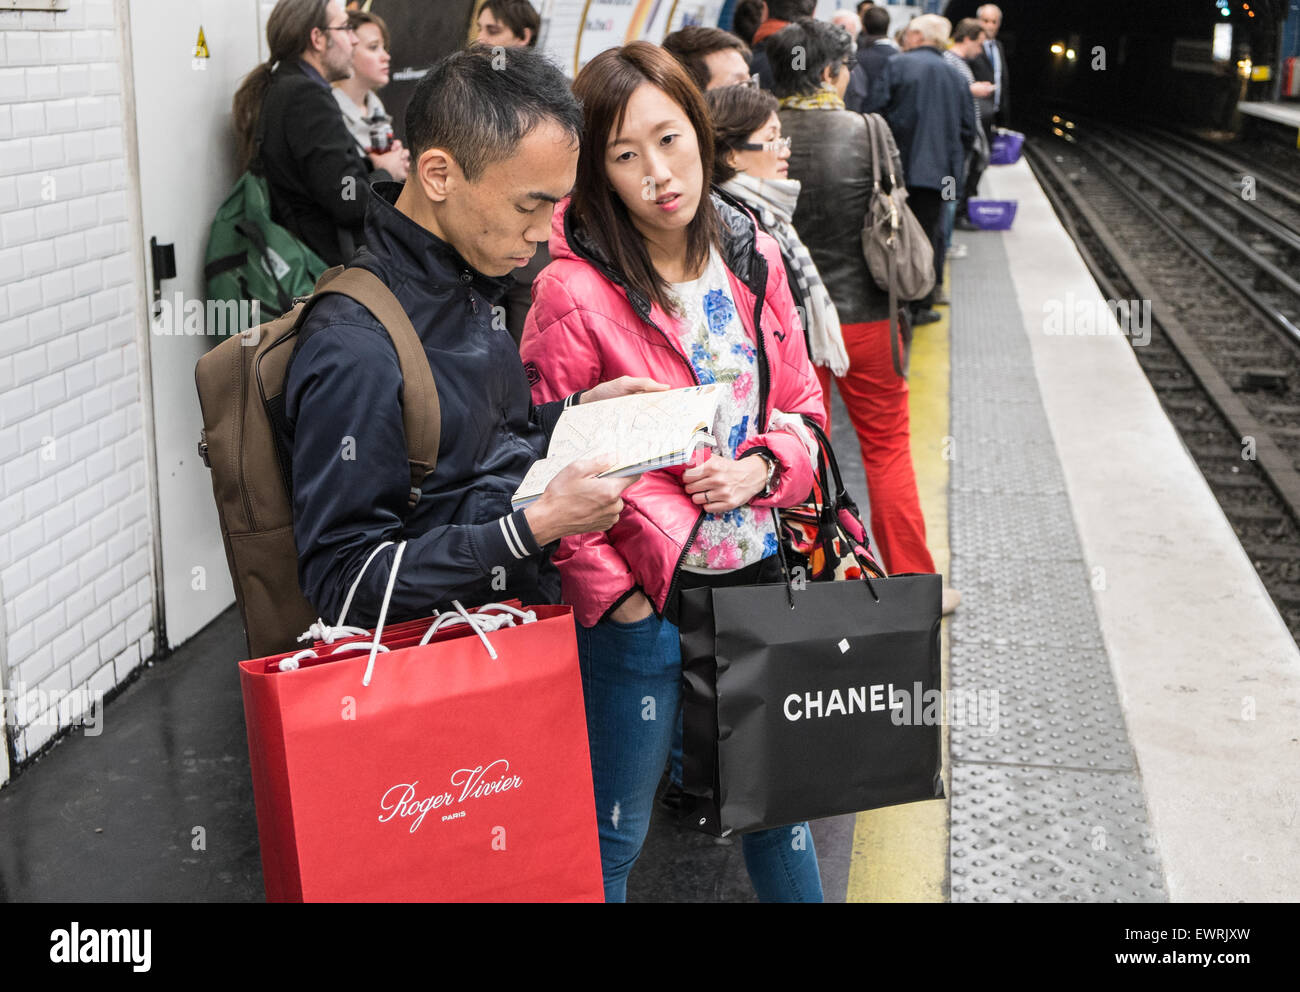 Parigi,Francia,francese,turisti cinesi,turistica, con,Chanel,branded,negozi,bag,a metro stazione ferroviaria a tarda notte dopo aver occupato il giorno di shopping. Foto Stock